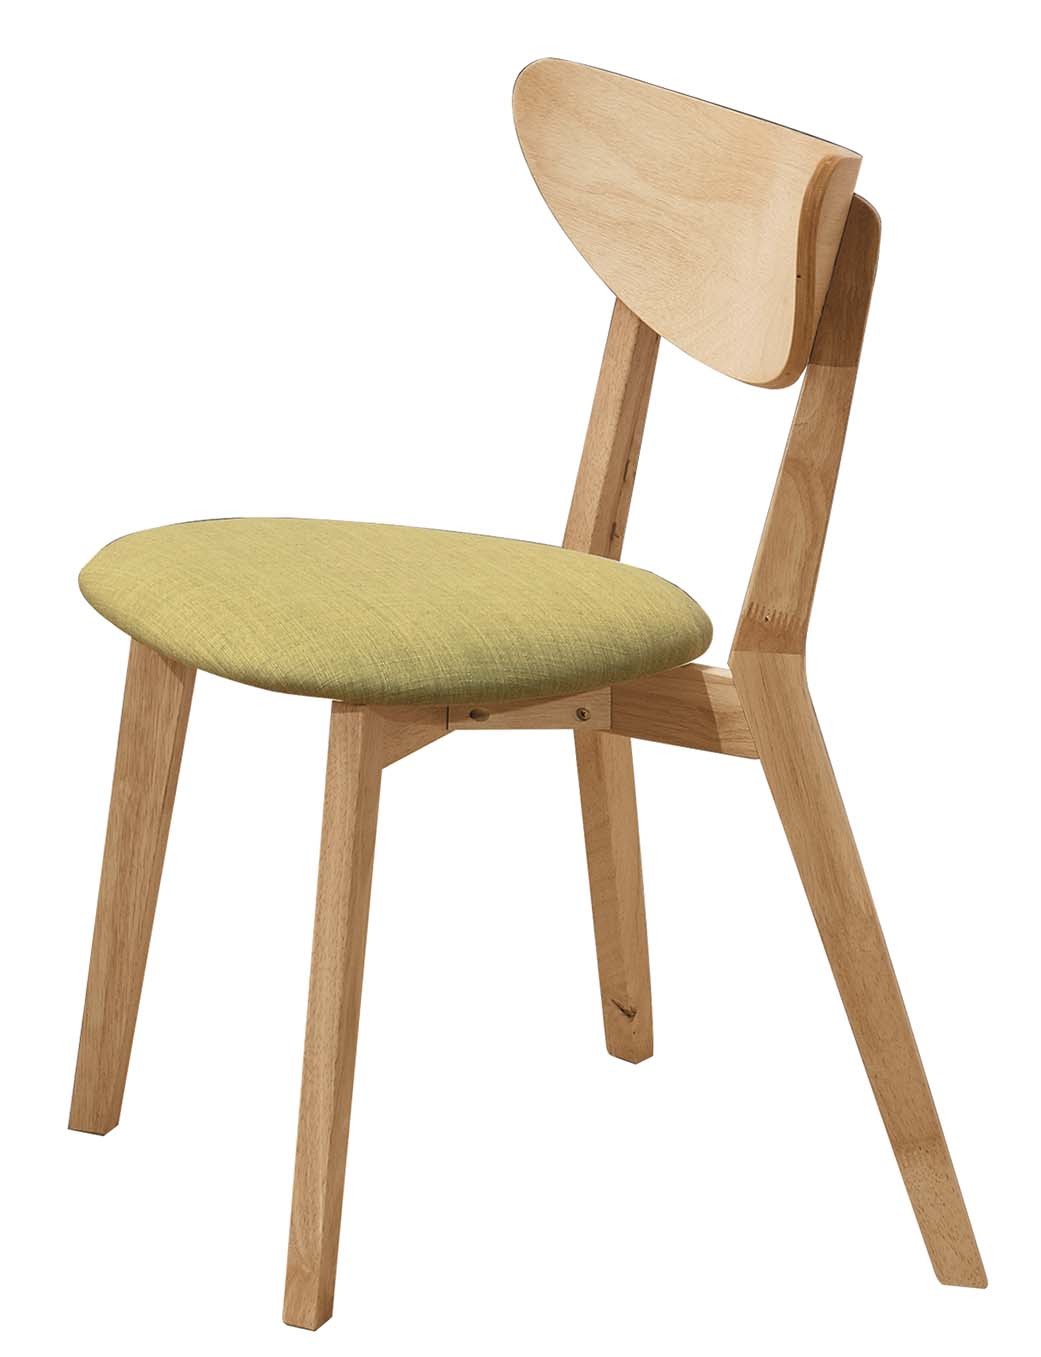 特柏本色綠布餐椅